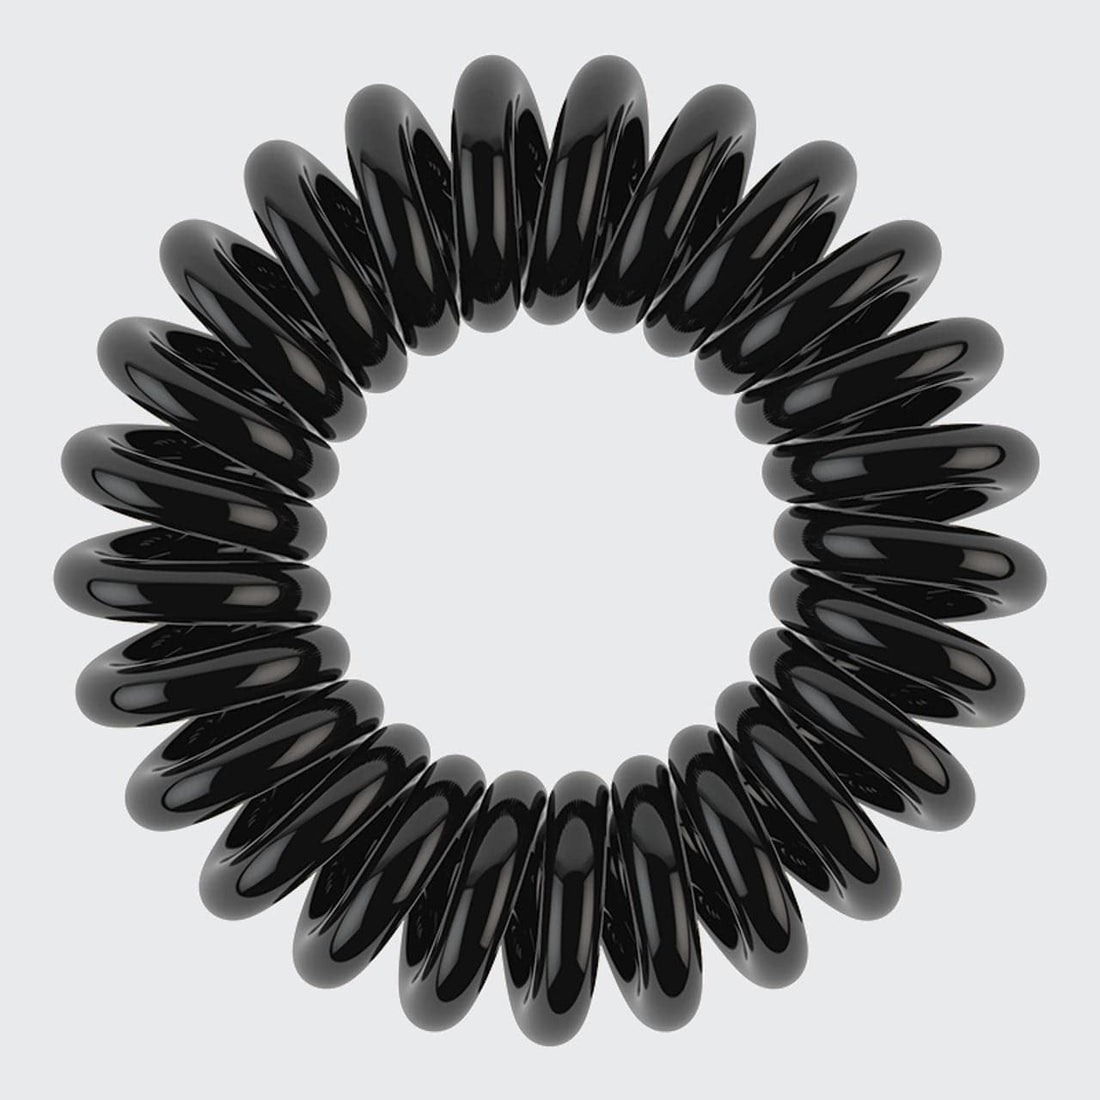 Spiral Hair Ties 8 Pack - Black